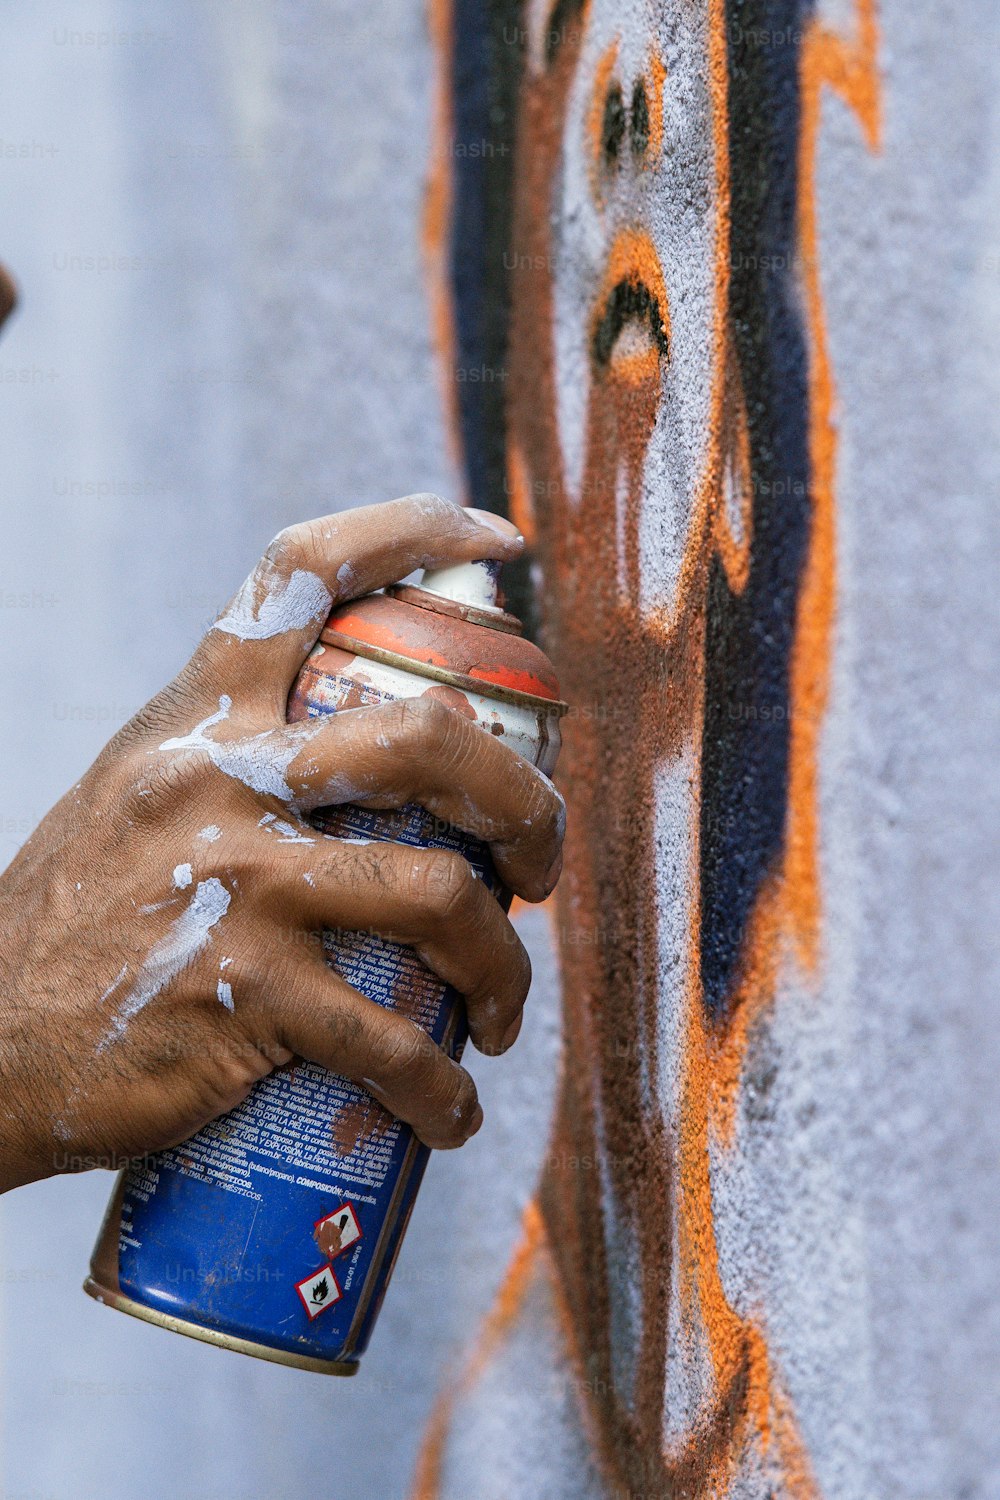 Una persona pintando con spray una pared con graffiti